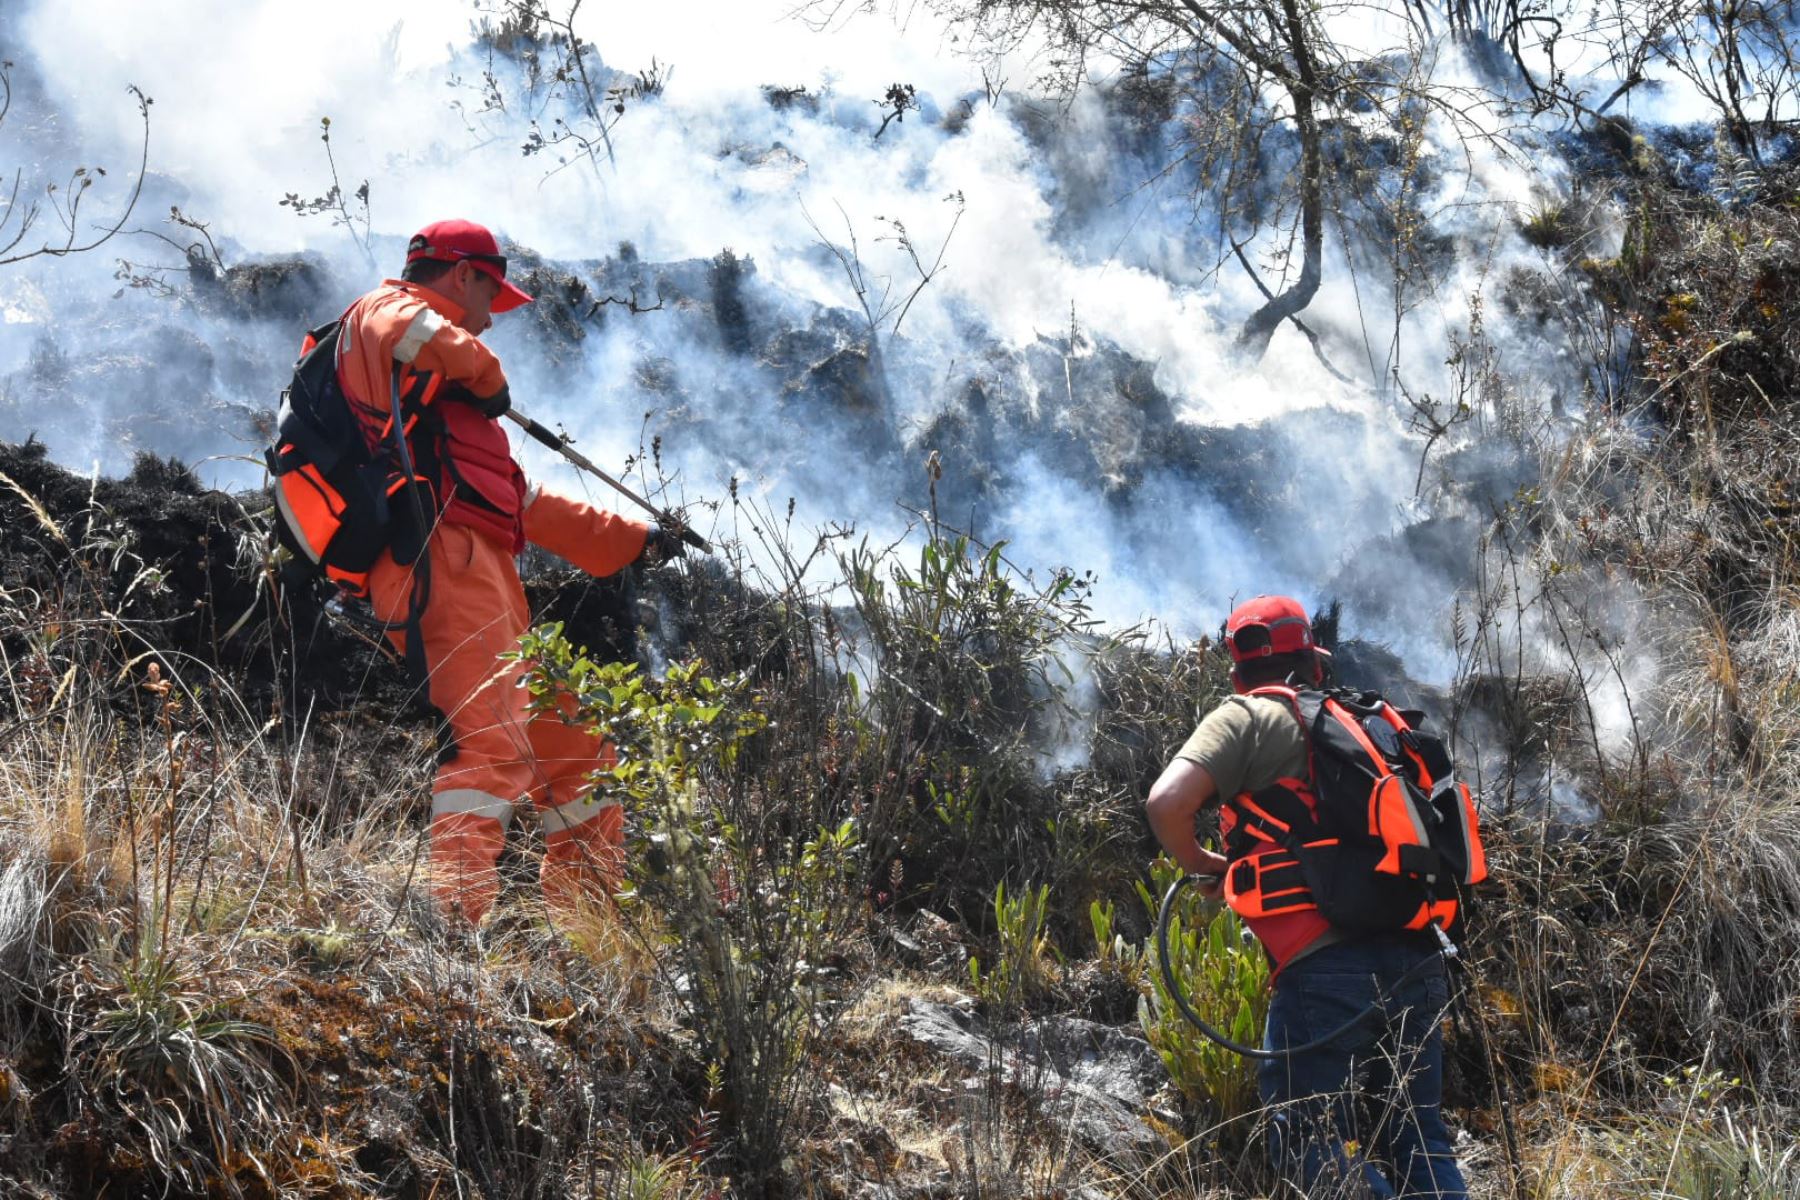 Especialistas temen que los incendios forestales aumenten en el Perú a causa del calentamiento global. ANDINA/Percy Hurtado Santillán